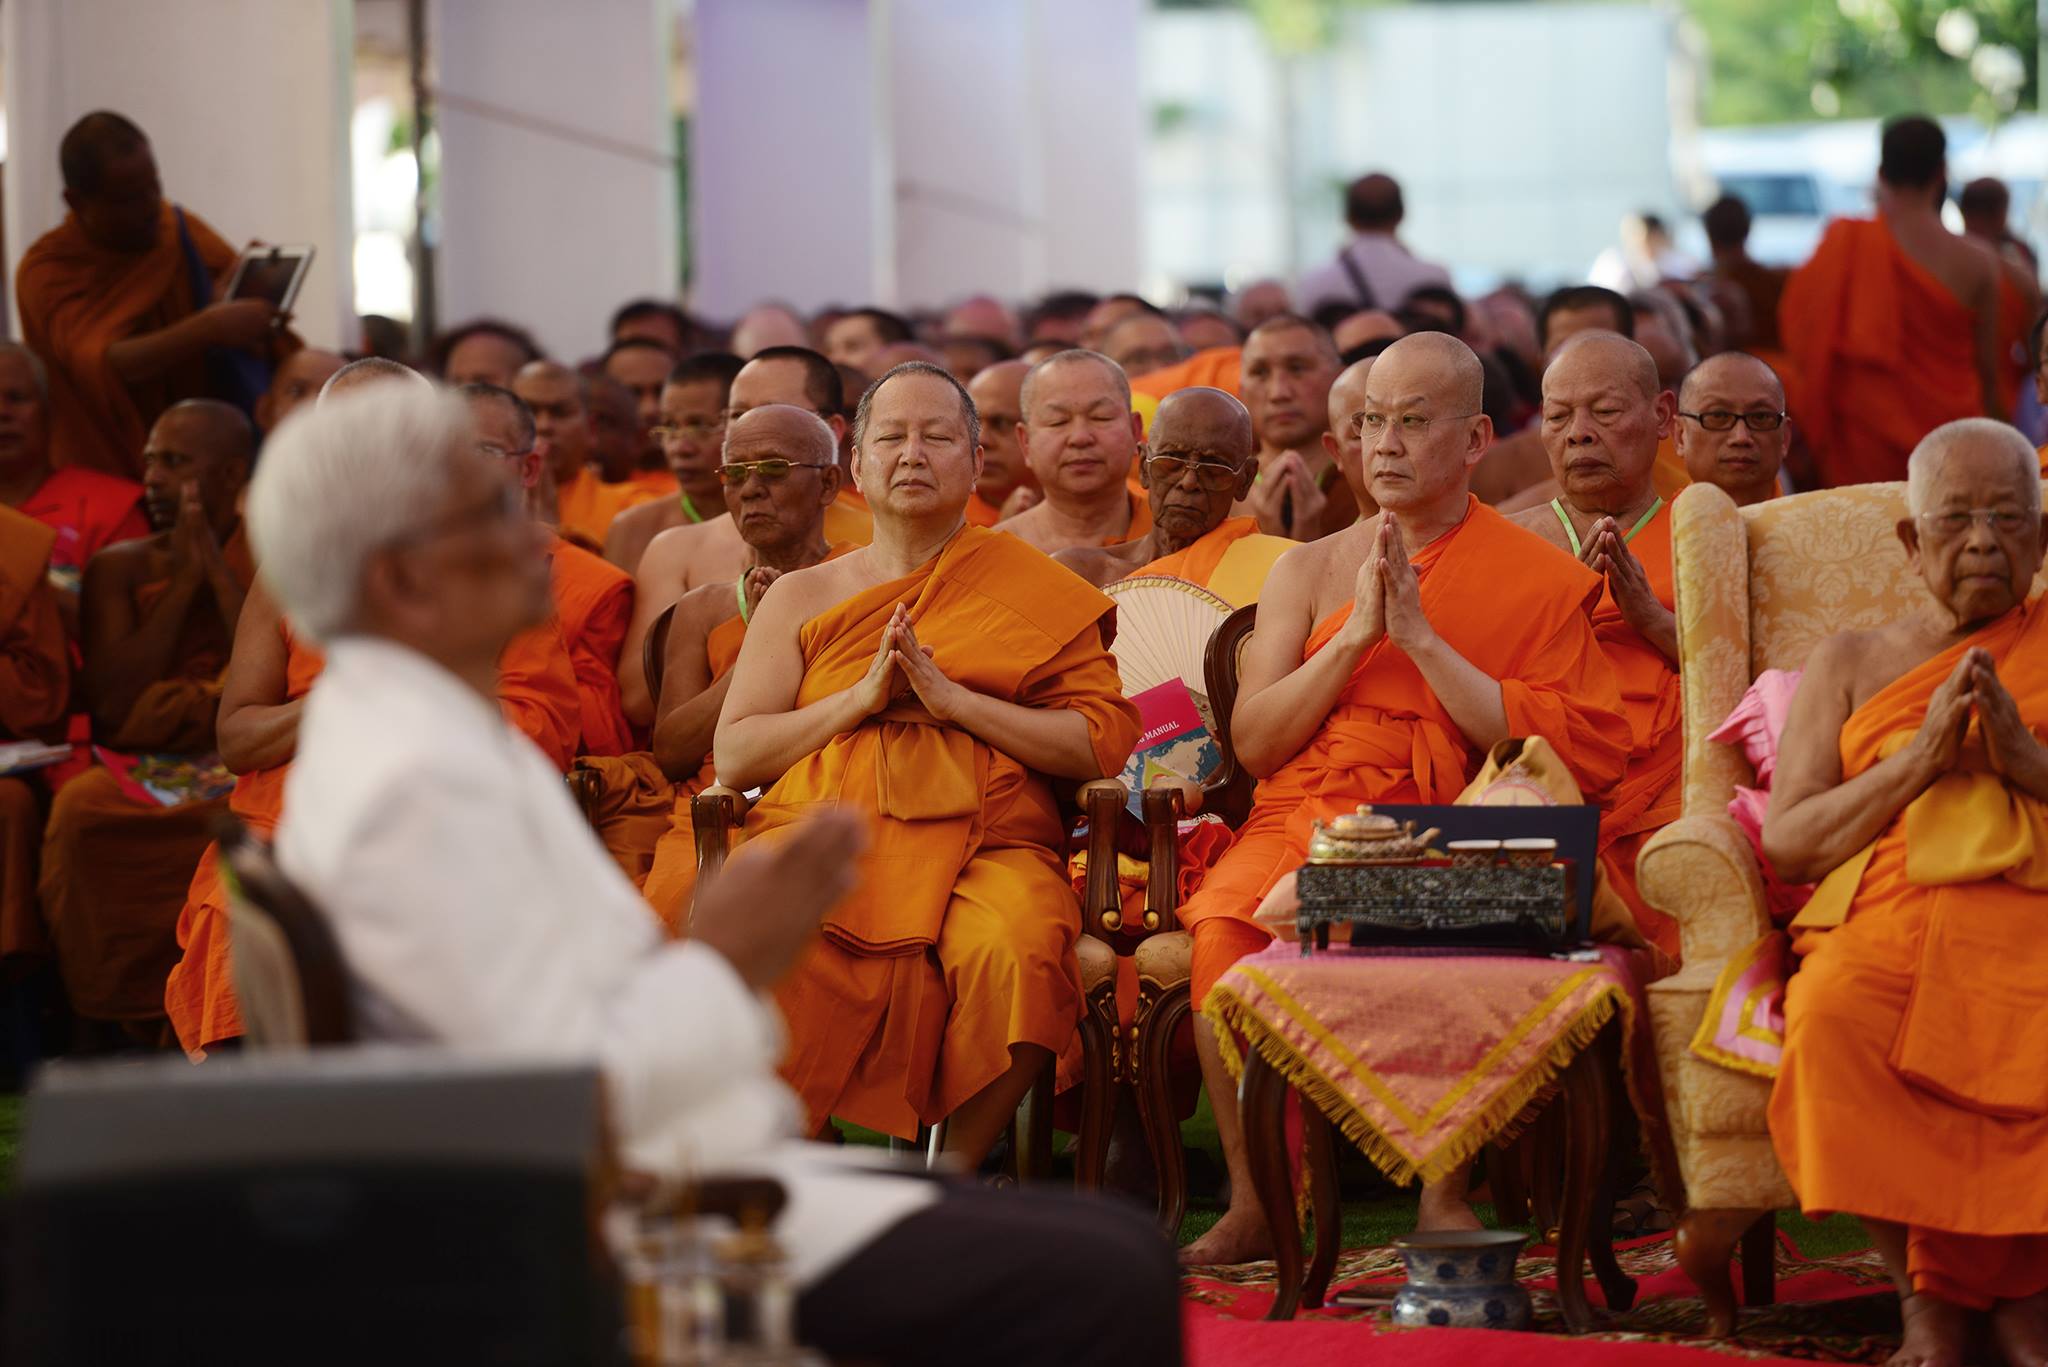 A harmadik napon az ENSZ bangkoki épületében folytatódott az ünnepség, ahol az elmúlt napok összegzéseként kiadták a bangkoki deklarációt, lásd: <a href="http://bit.ly/1D8E5Ip">http://bit.ly/1D8E5Ip</a>  Majd végül a Buddhamonthon parkban gyújtottak a résztvevők gyertyát Maha Chakri Sirindhorn thai hercegnő 60. születésnapjának tiszteletére